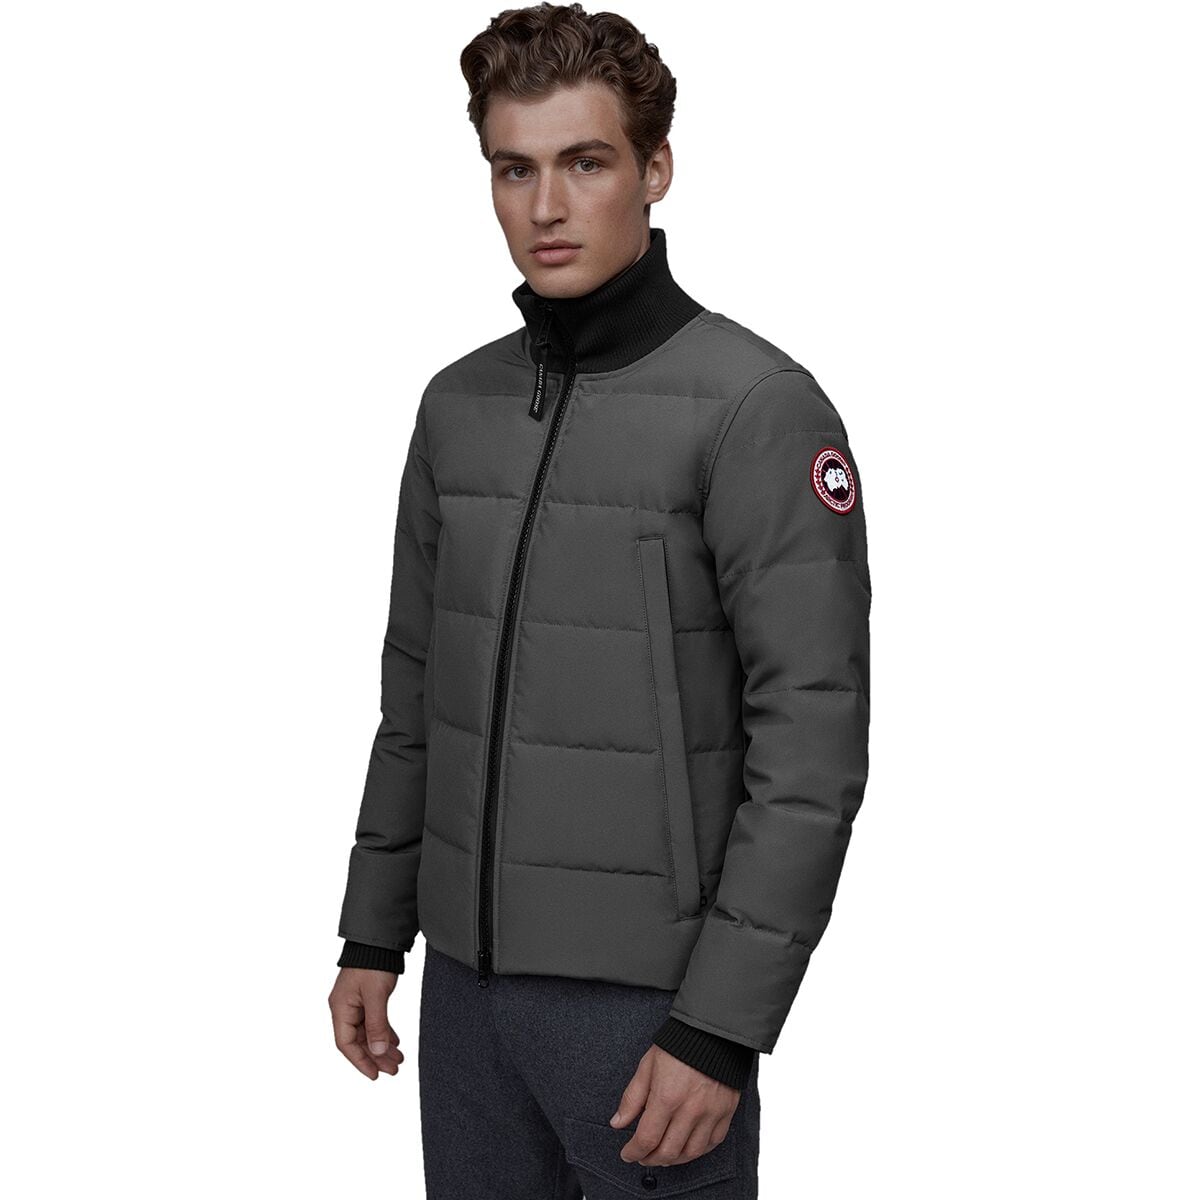 Canada Goose Jackets, Coats, Parkas - Men's